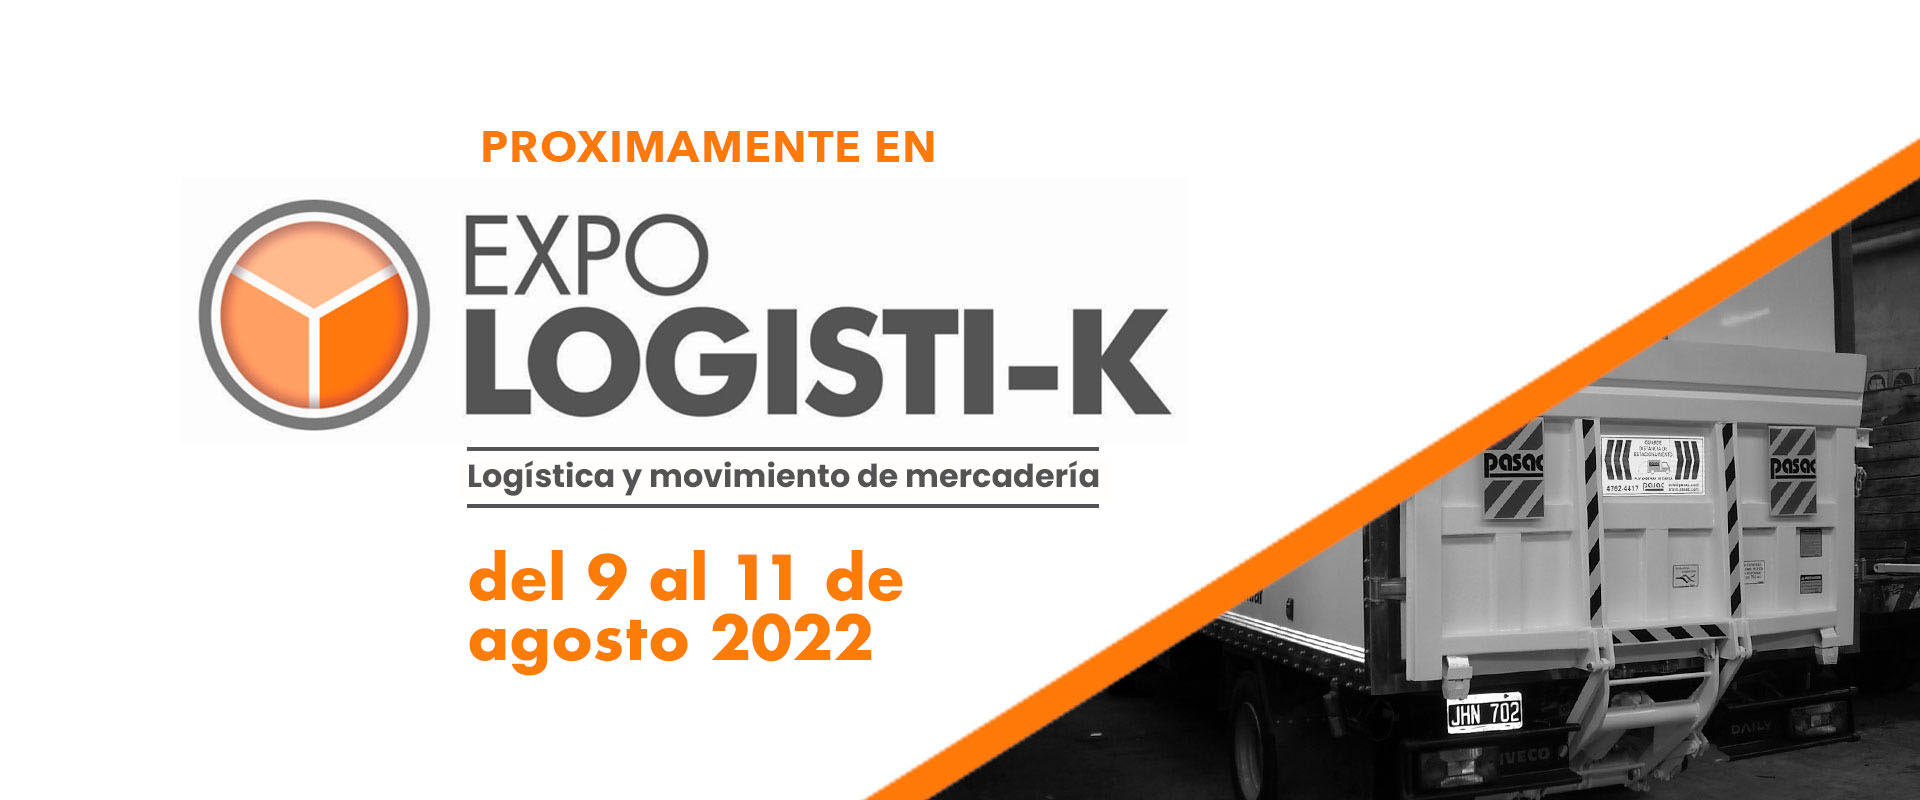 Expo Logistik